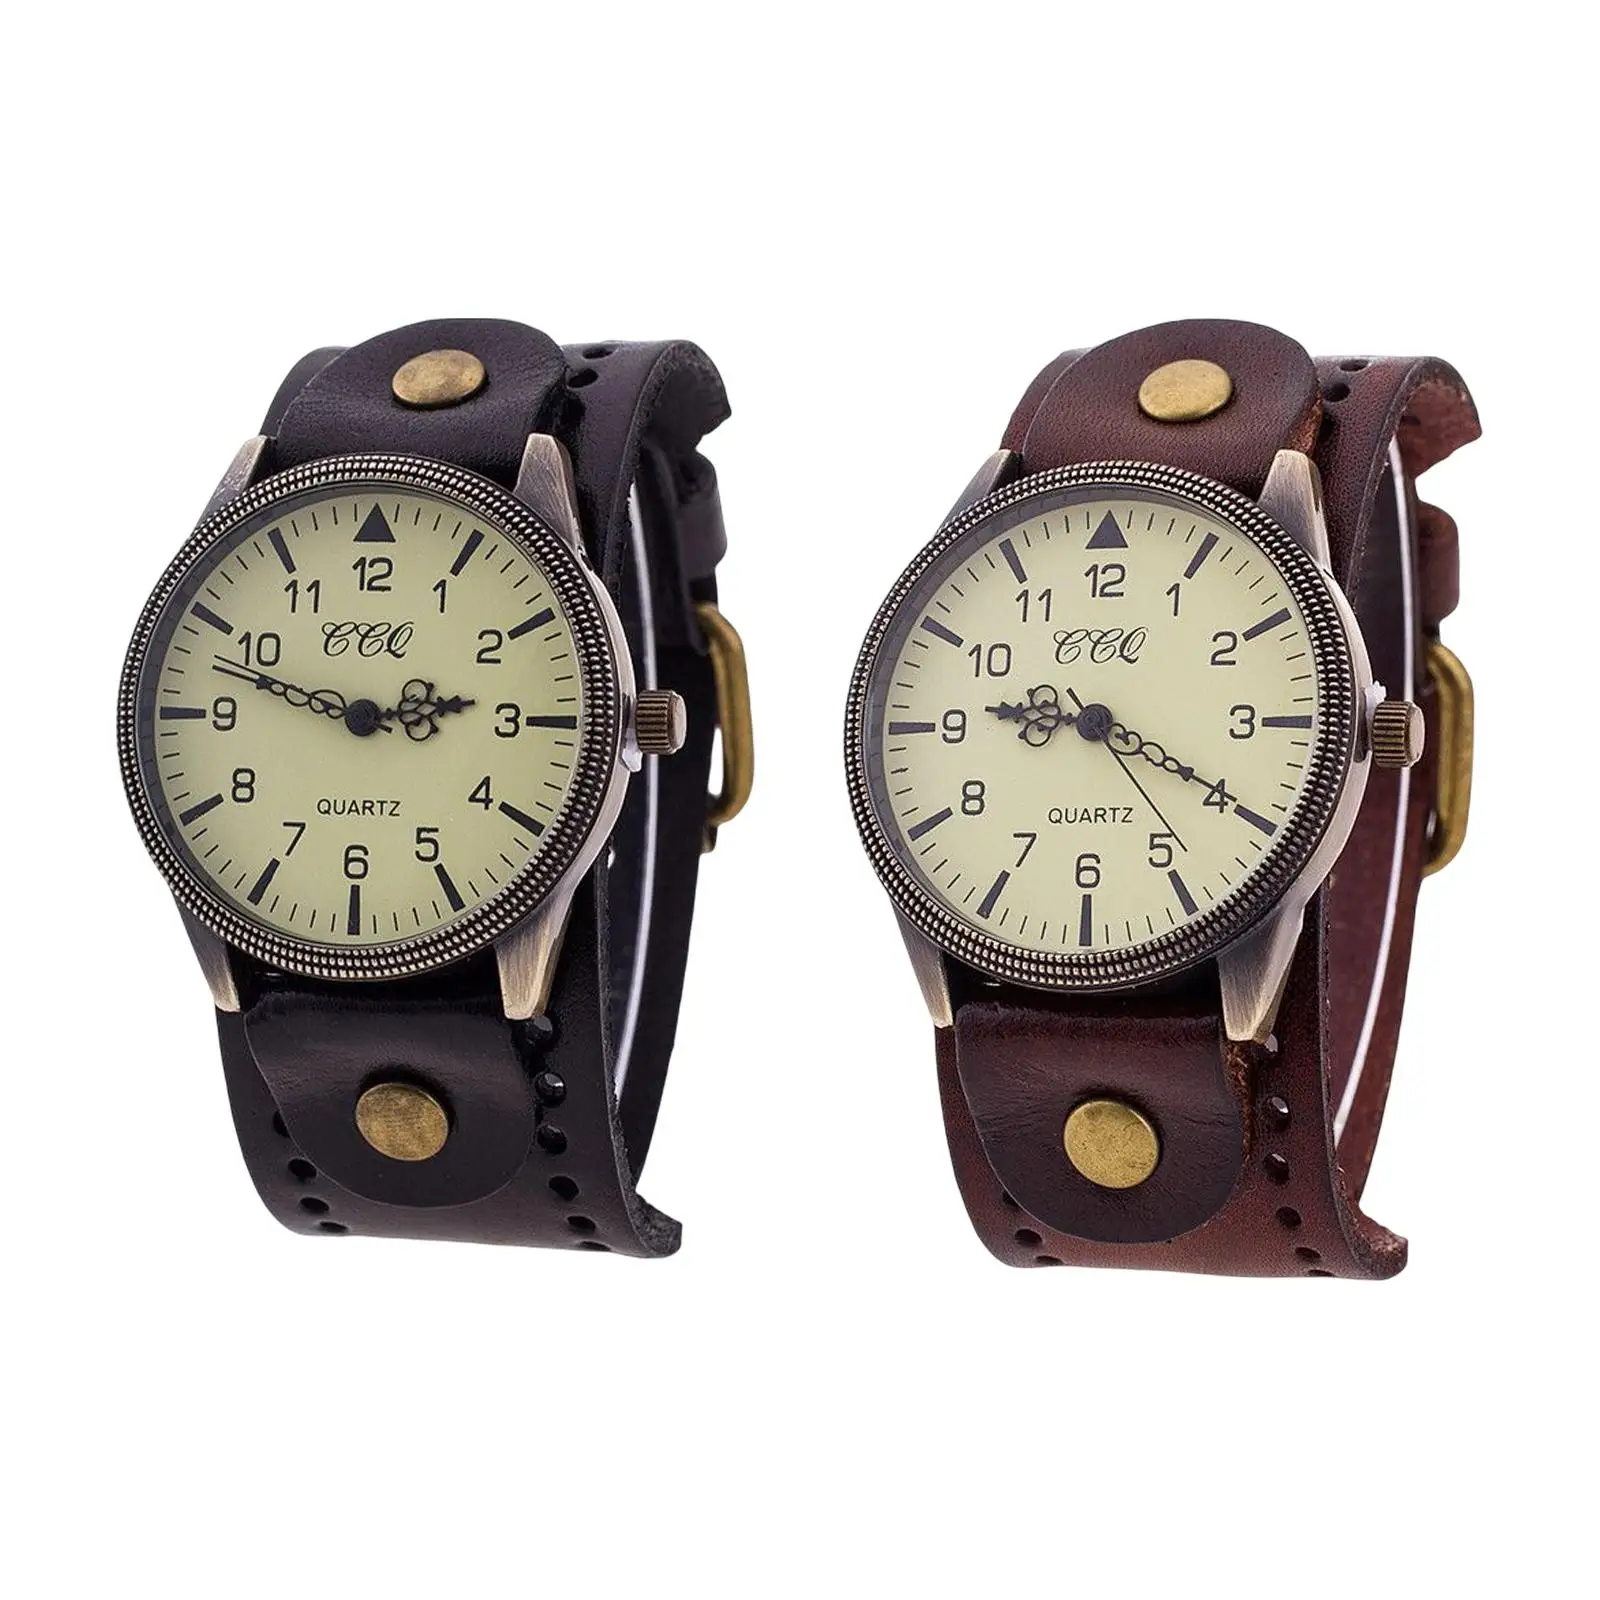 Bracelet Watch PU Leather Male Watch Band Cuff Hybrid Design Wristwatch for Bracelet Watch Band